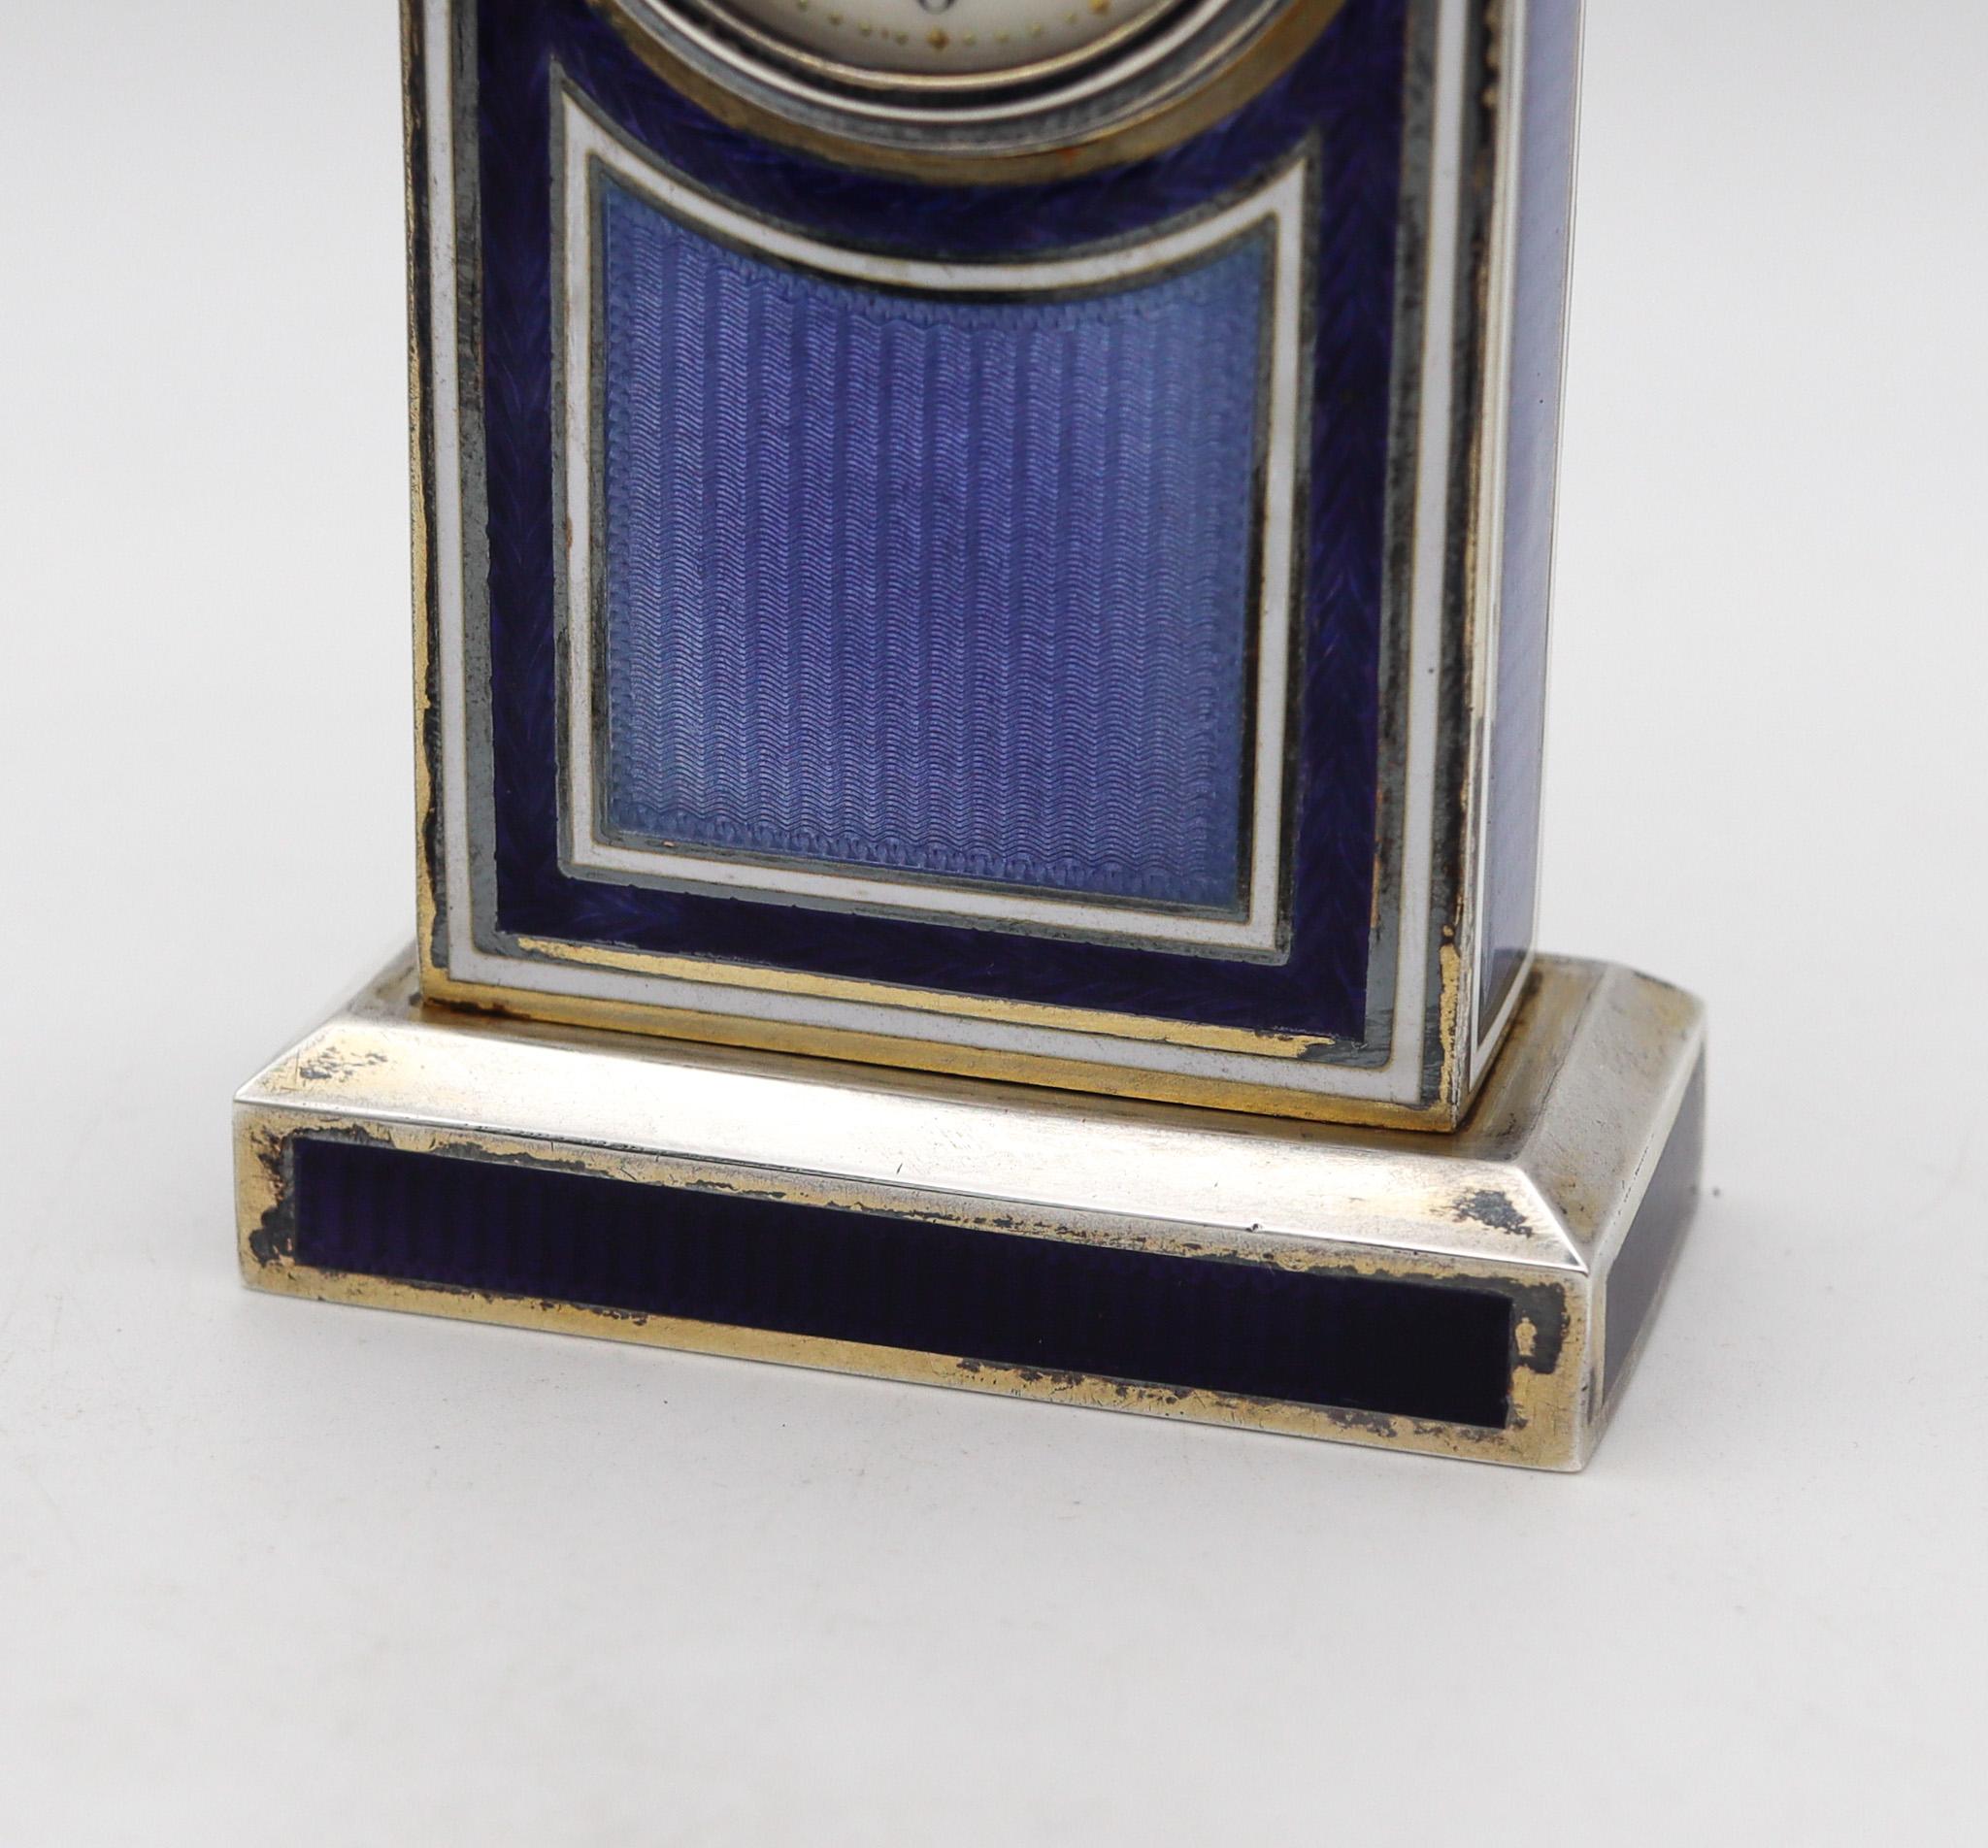 Pendule de bureau boudoir miniature de l'époque édouardienne.

Belle horloge de bureau miniature, fabriquée en Suisse pendant la période édouardienne-belle époque, dans les années 1905. La qualité de fabrication de cette horloge est exceptionnelle.